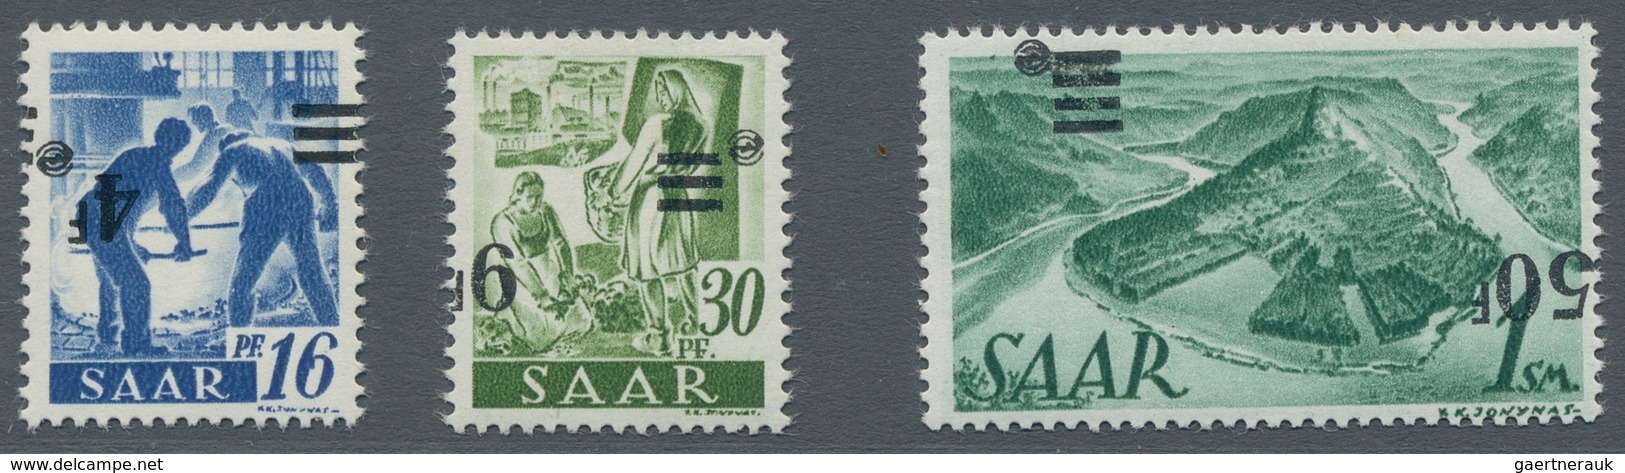 Saarland (1947/56): 1947, "Saar II", zehn postfrische Werte mit Varianten, dabei u.a. Mi. 229 U, 231